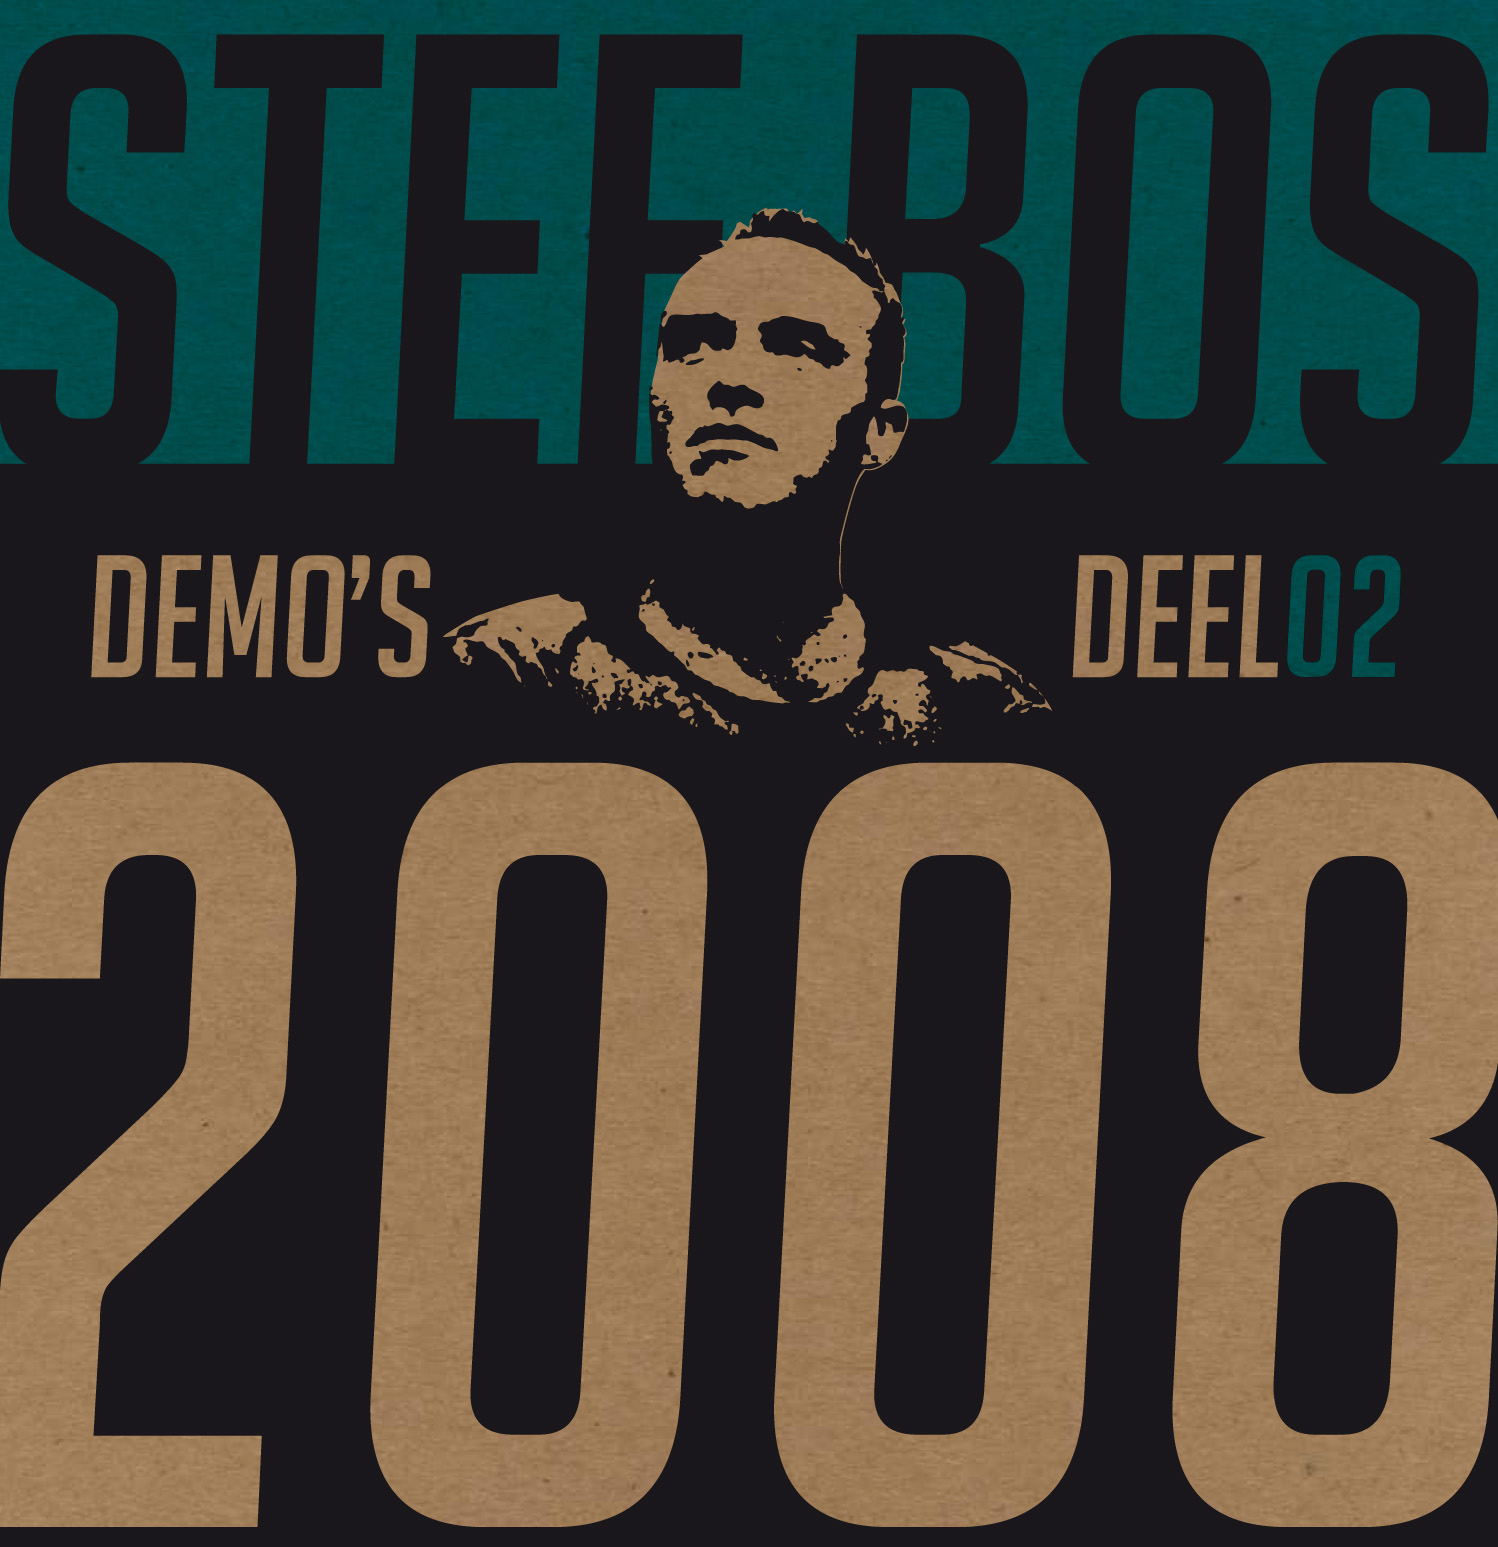 Demo's 2008 Deel 02